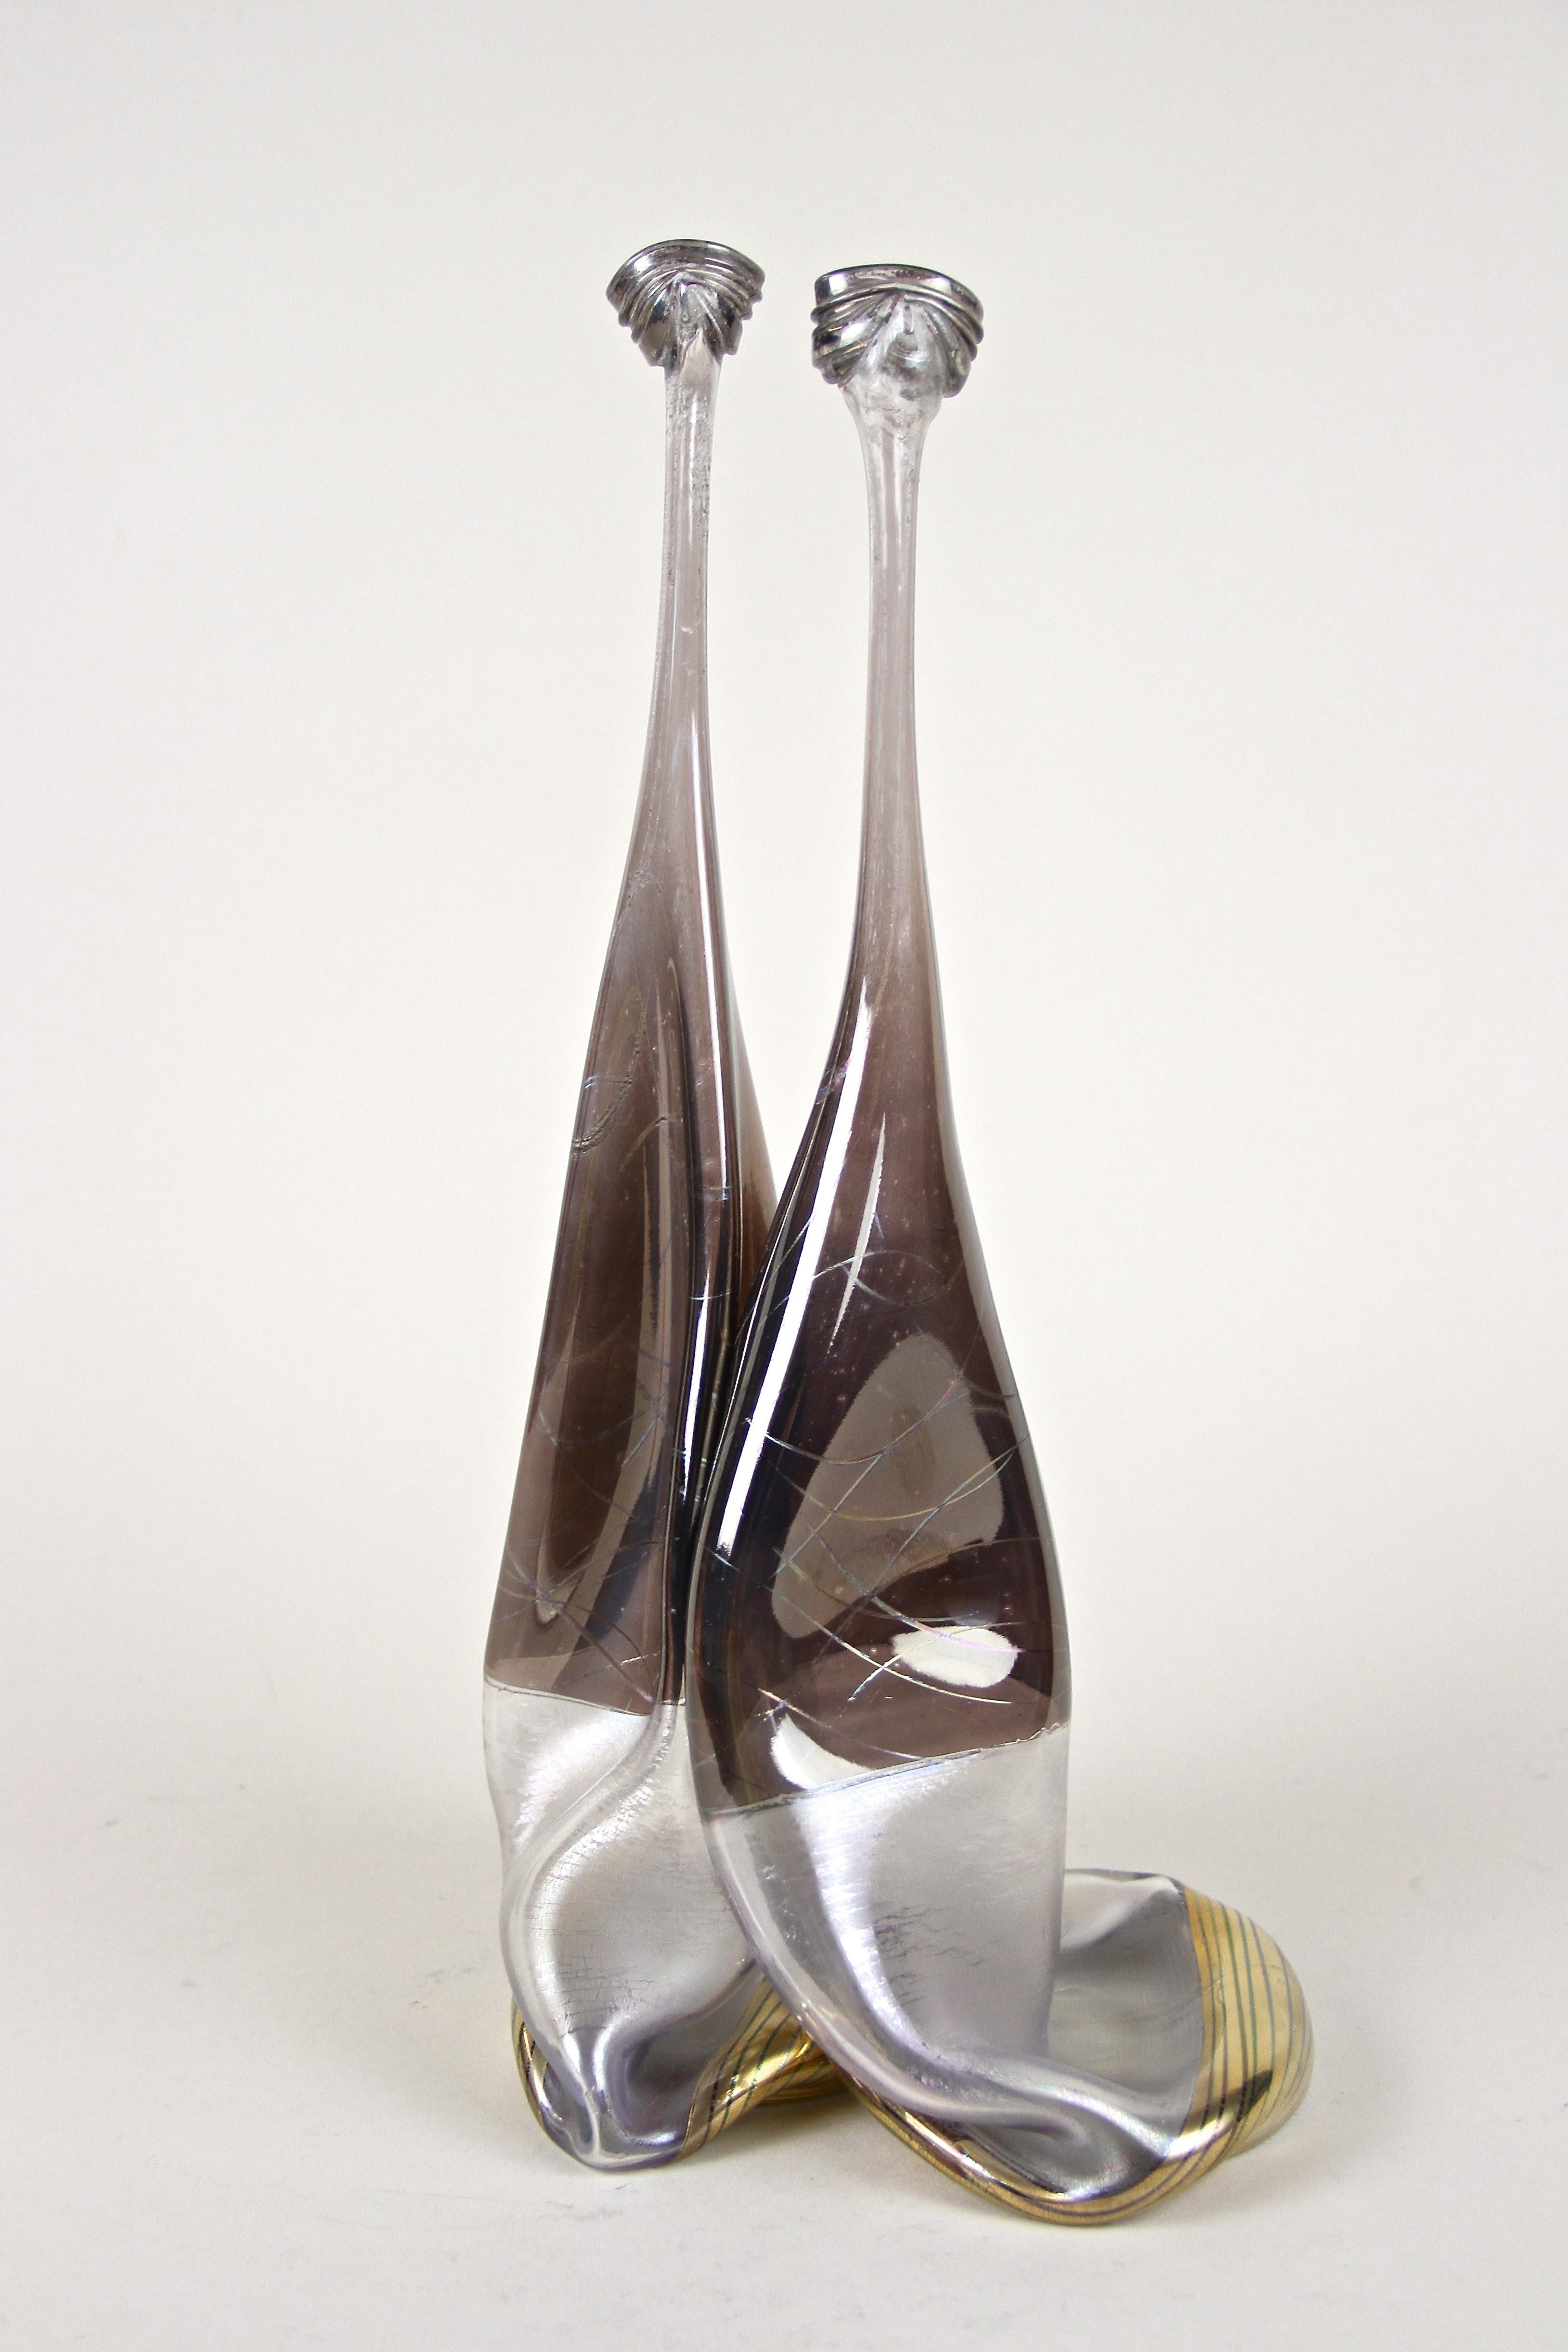 Extraordinaire vase en verre du 20e siècle fabriqué à la main par l'artiste verrier allemand Vera Walther. Un vase double en verre absolument unique, créé avec art à partir de deux belles bouteilles en verre, avec une surface légèrement irisée et un